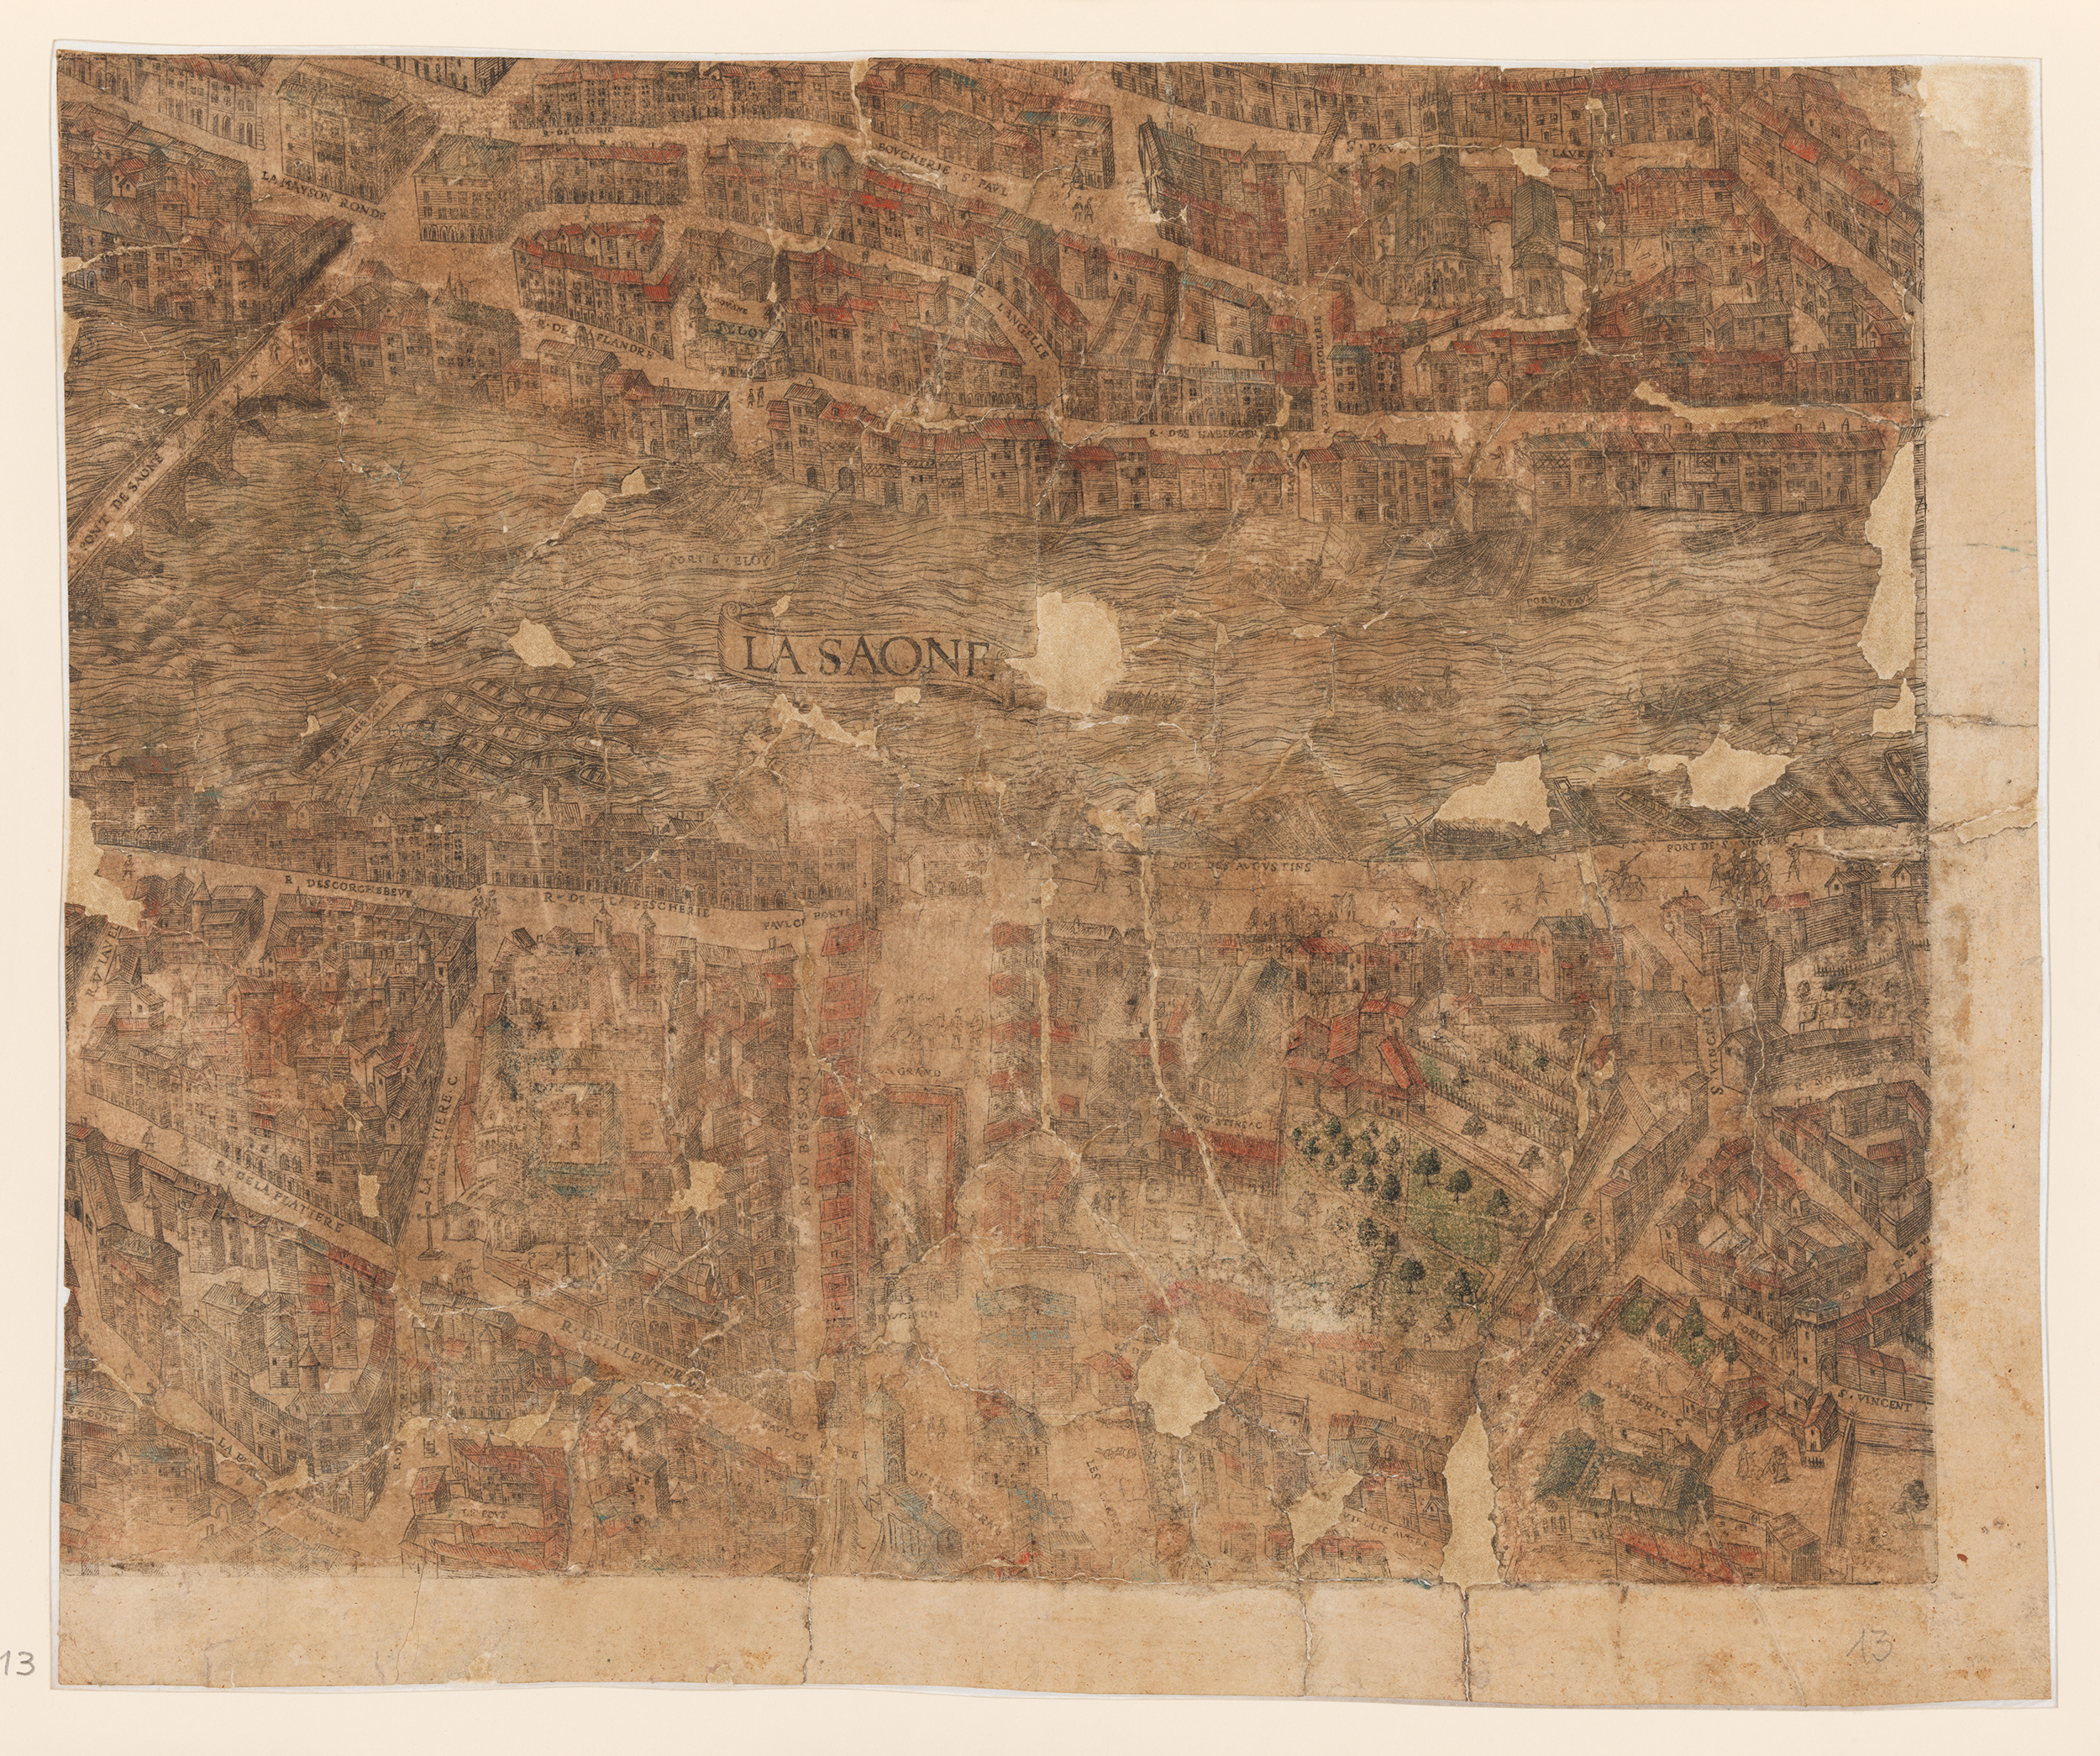 Plan scénographique de Lyon, ports Saint-Éloi et Saint-Paul sur la Saône : gravure réhaussée à la gouache (vers 1550, cote 2SAT/3, pl. 13)